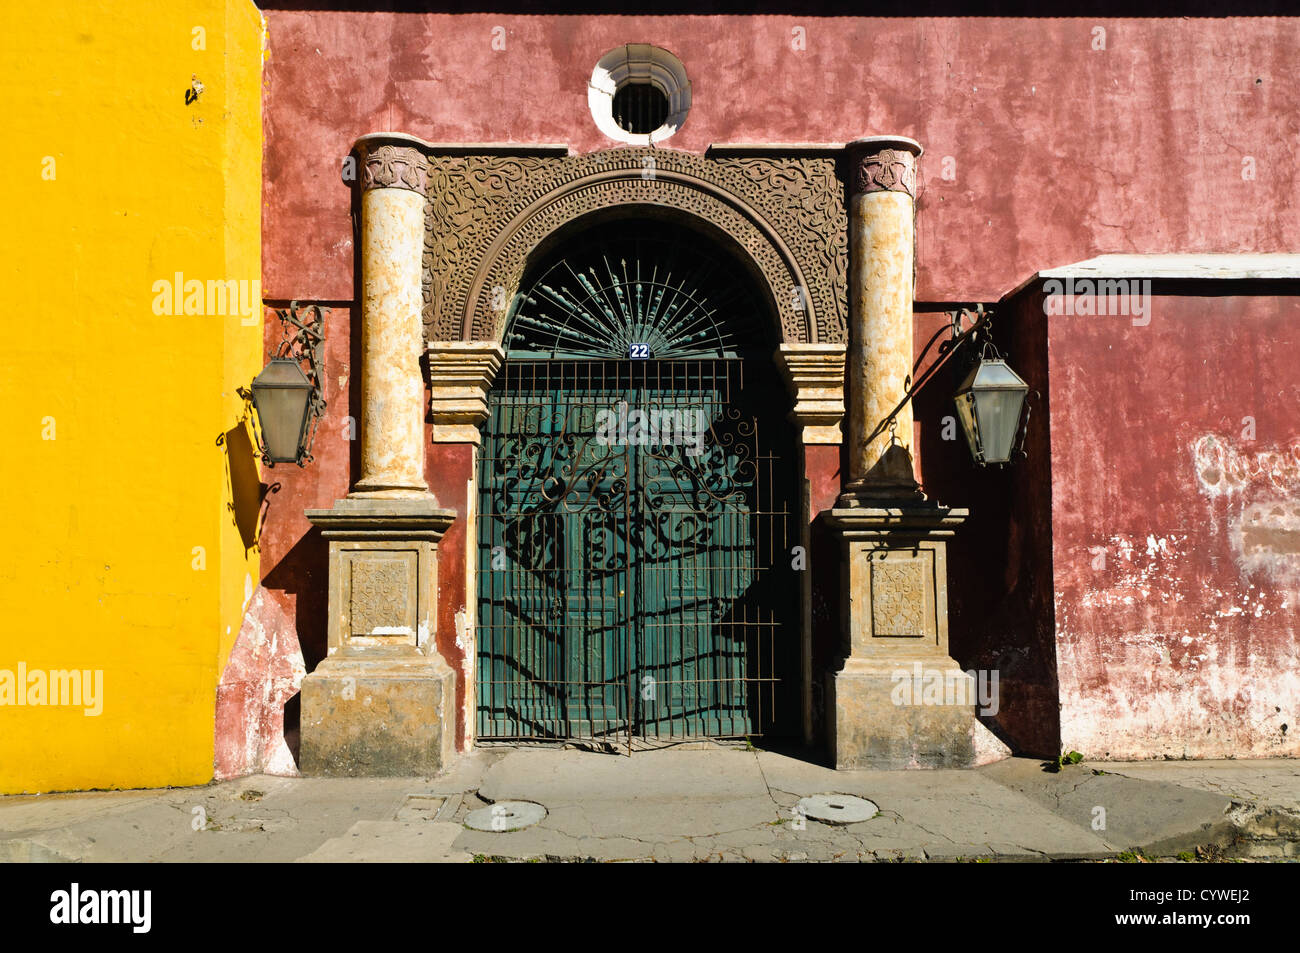 Ein Tor zu einem historischen spanischen kolonialen Gebäude in Antigua Guatemala. Berühmt für seine gut erhaltene spanische barocke Architektur sowie eine Reihe von Ruinen von Erdbeben, Antigua Guatemala ist ein UNESCO-Weltkulturerbe und ehemalige Hauptstadt von Guatemala. Stockfoto